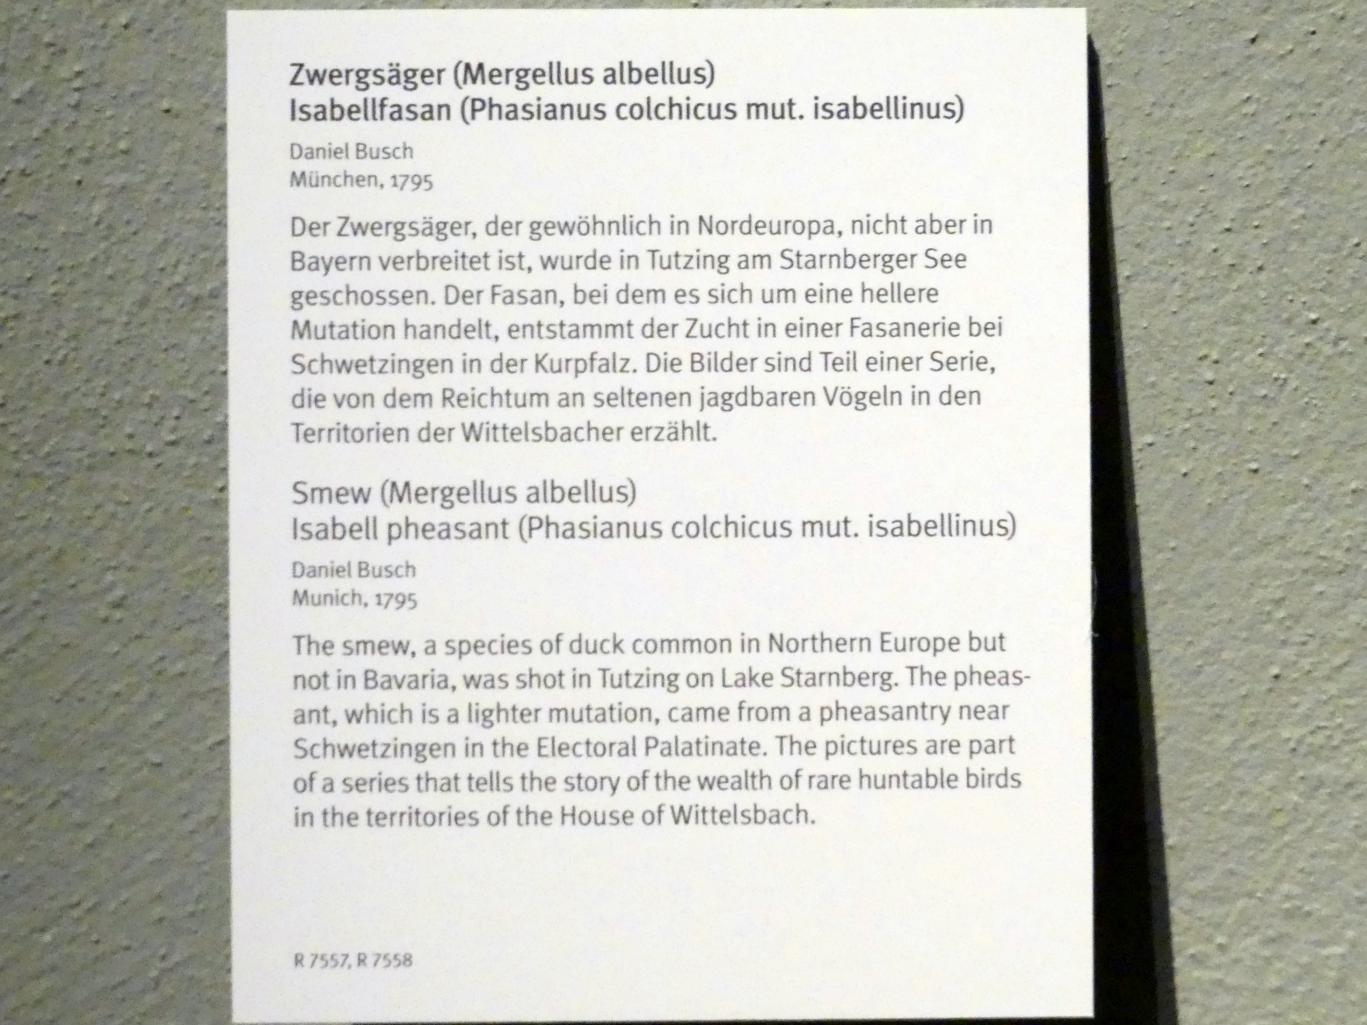 Daniel Busch (1795), Isabellfasan (Phasianus colchicus mut. isabellinus), München, Bayerisches Nationalmuseum, Obergeschoss, Saal 86, 1795, Bild 2/2